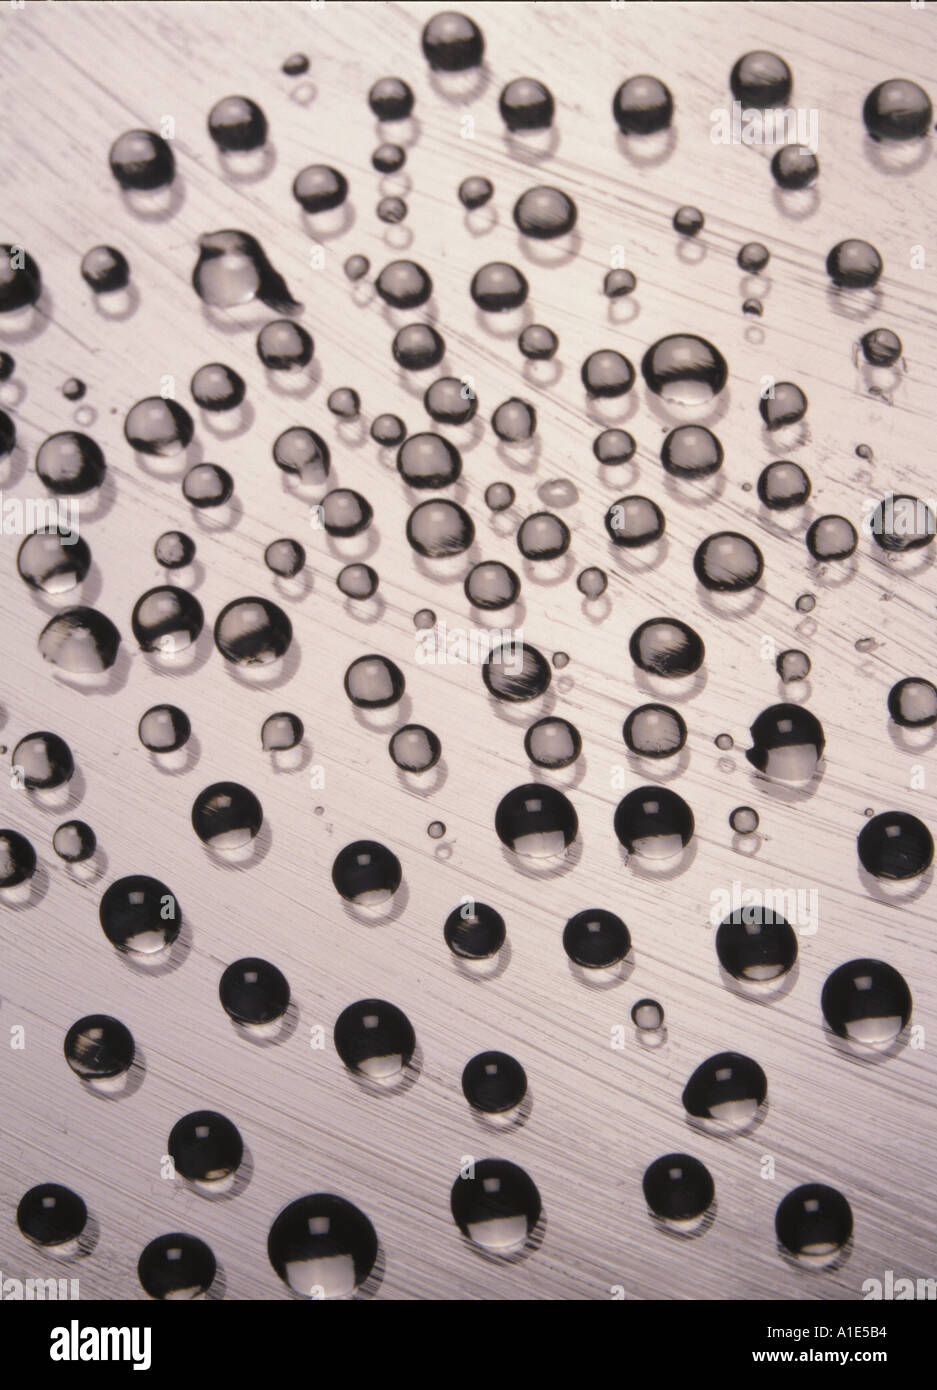 Nahaufnahme von Wassertröpfchen auf gefettetem Glas, die Oberflächenspannung und kugelförmige Formen zeigen. Relevant für Physik und Materialwissenschaften Stockfoto